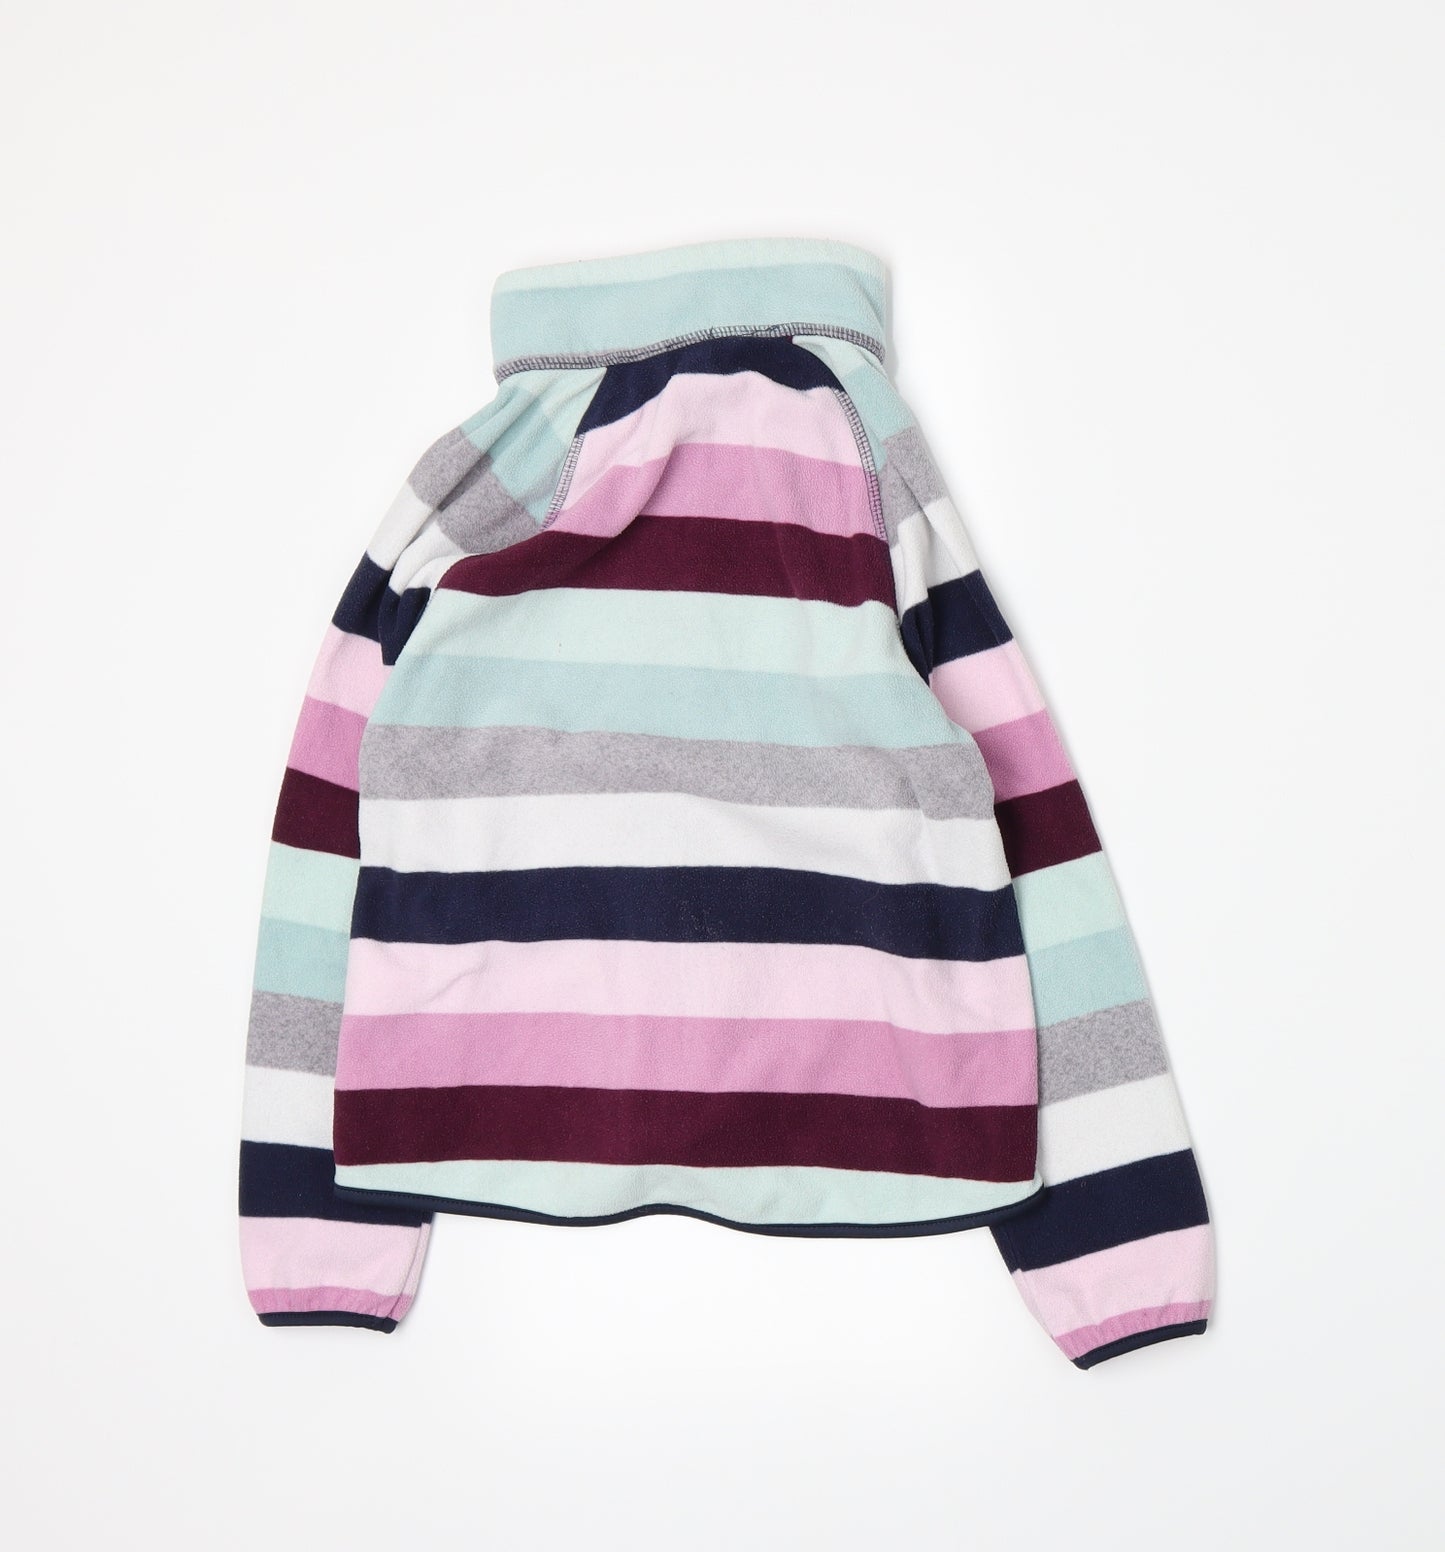 H&M Girls Multicoloured Striped  Basic Jacket Jacket Size 6-7 Years